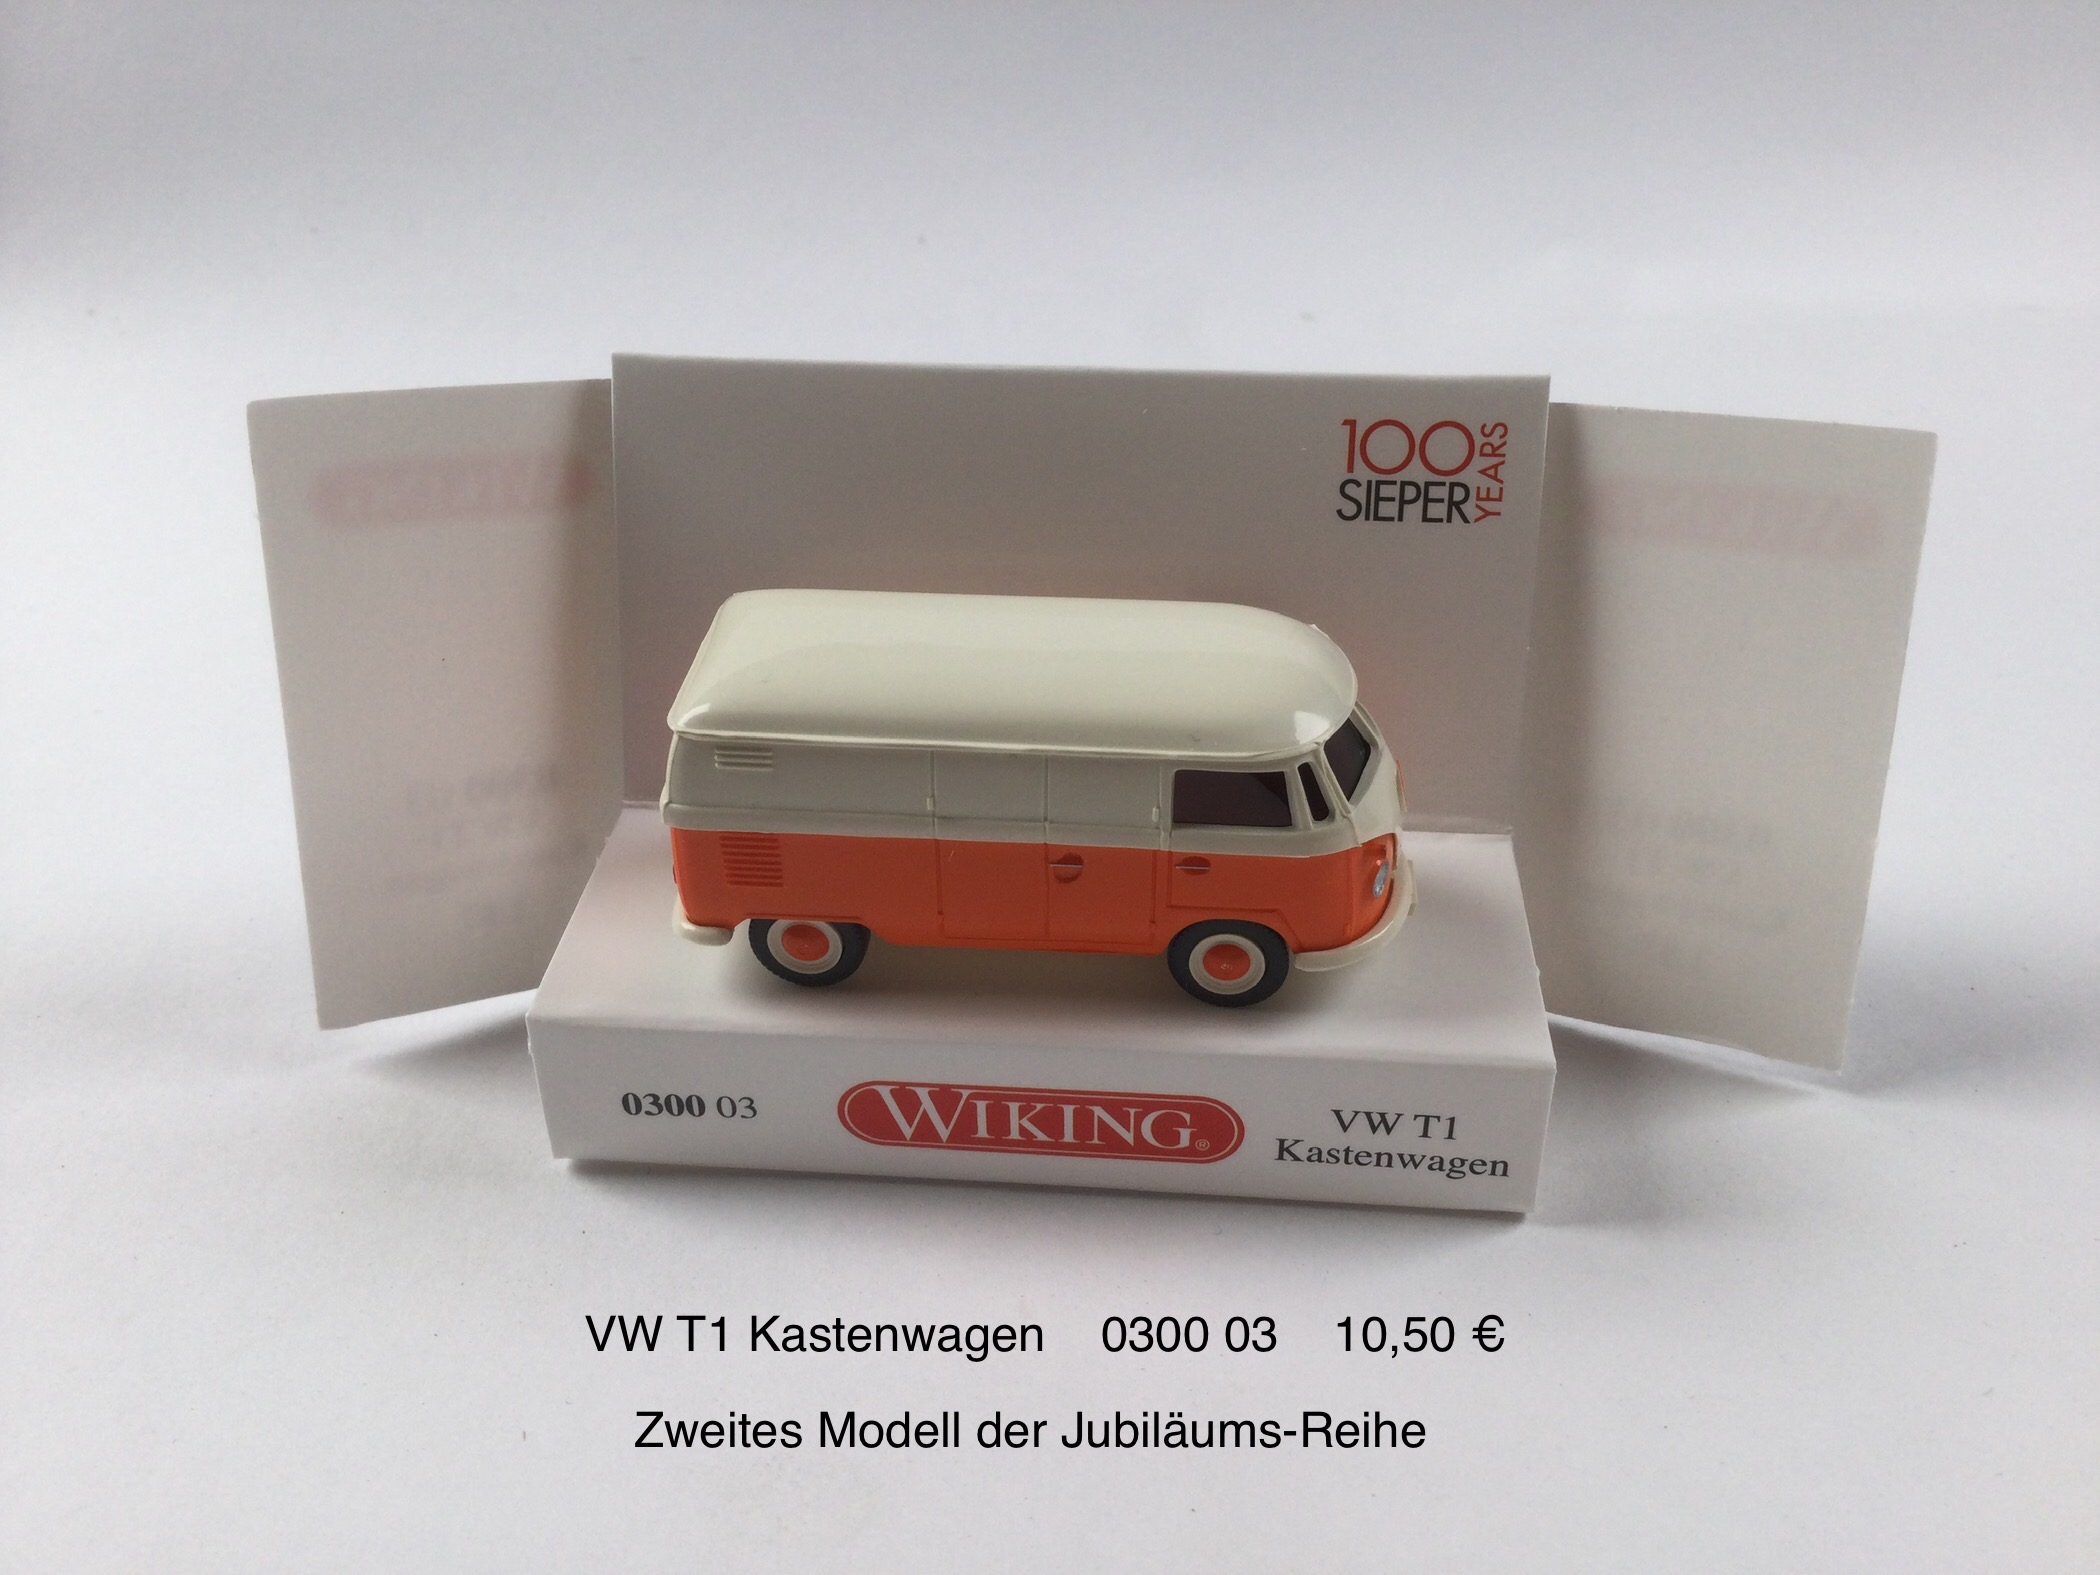 VW T1 Kastenwagen, Zweites Modell der Jubiläumsreihe